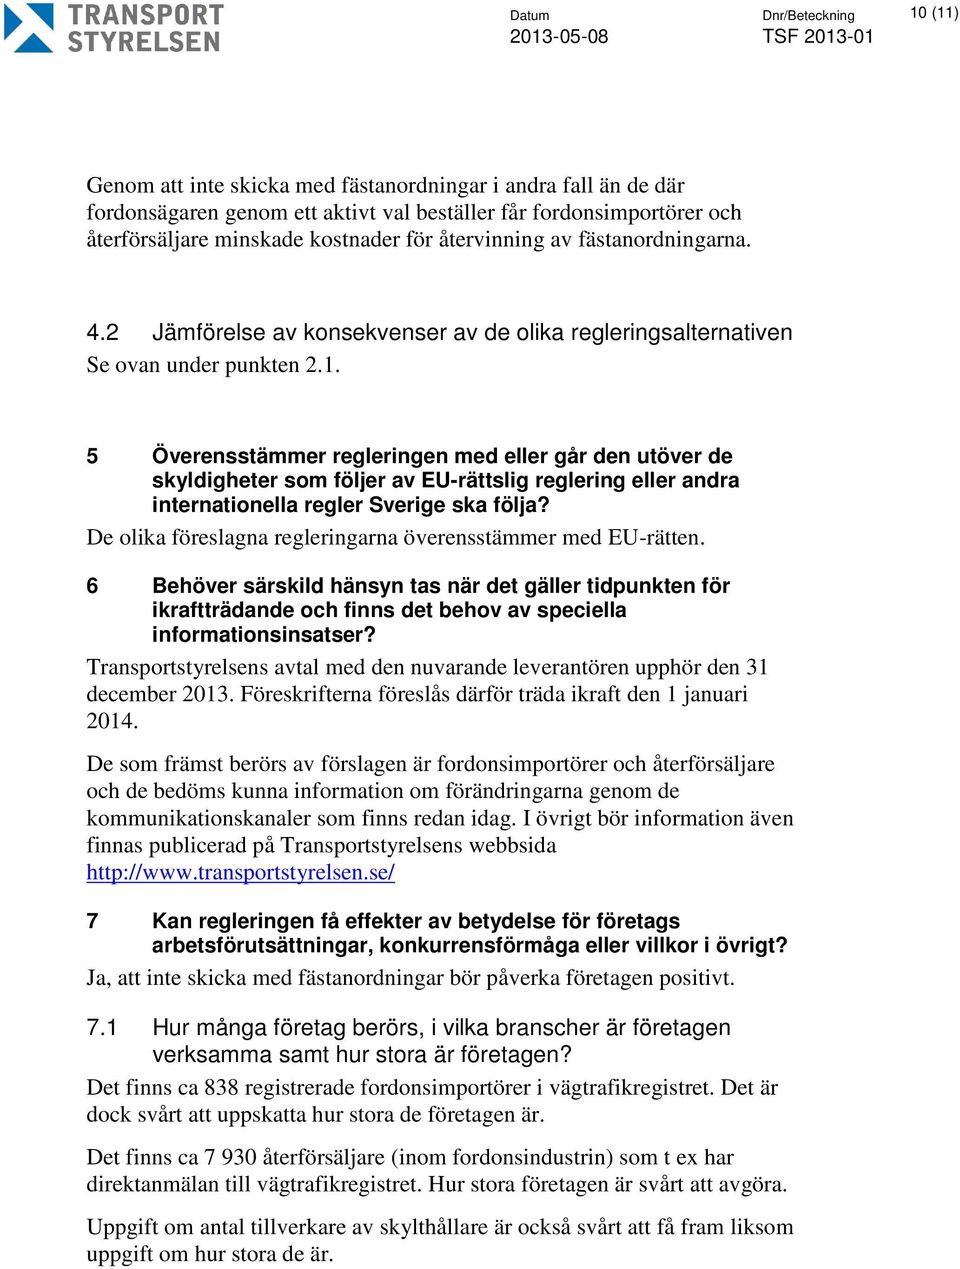 5 Överensstämmer regleringen med eller går den utöver de skyldigheter som följer av EU-rättslig reglering eller andra internationella regler Sverige ska följa?